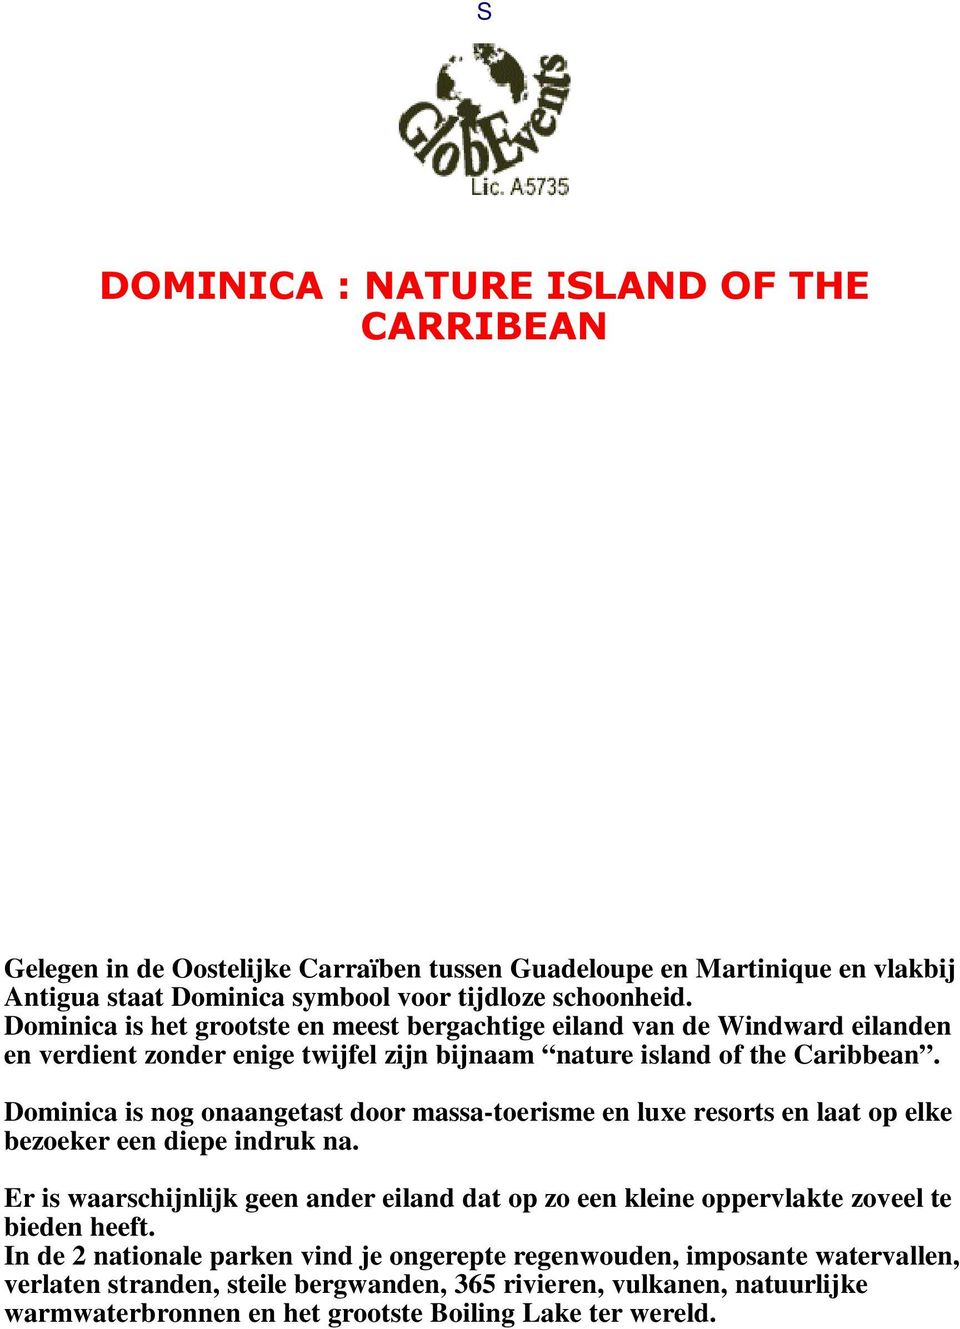 Dominica is nog onaangetast door massa-toerisme en luxe resorts en laat op elke bezoeker een diepe indruk na.